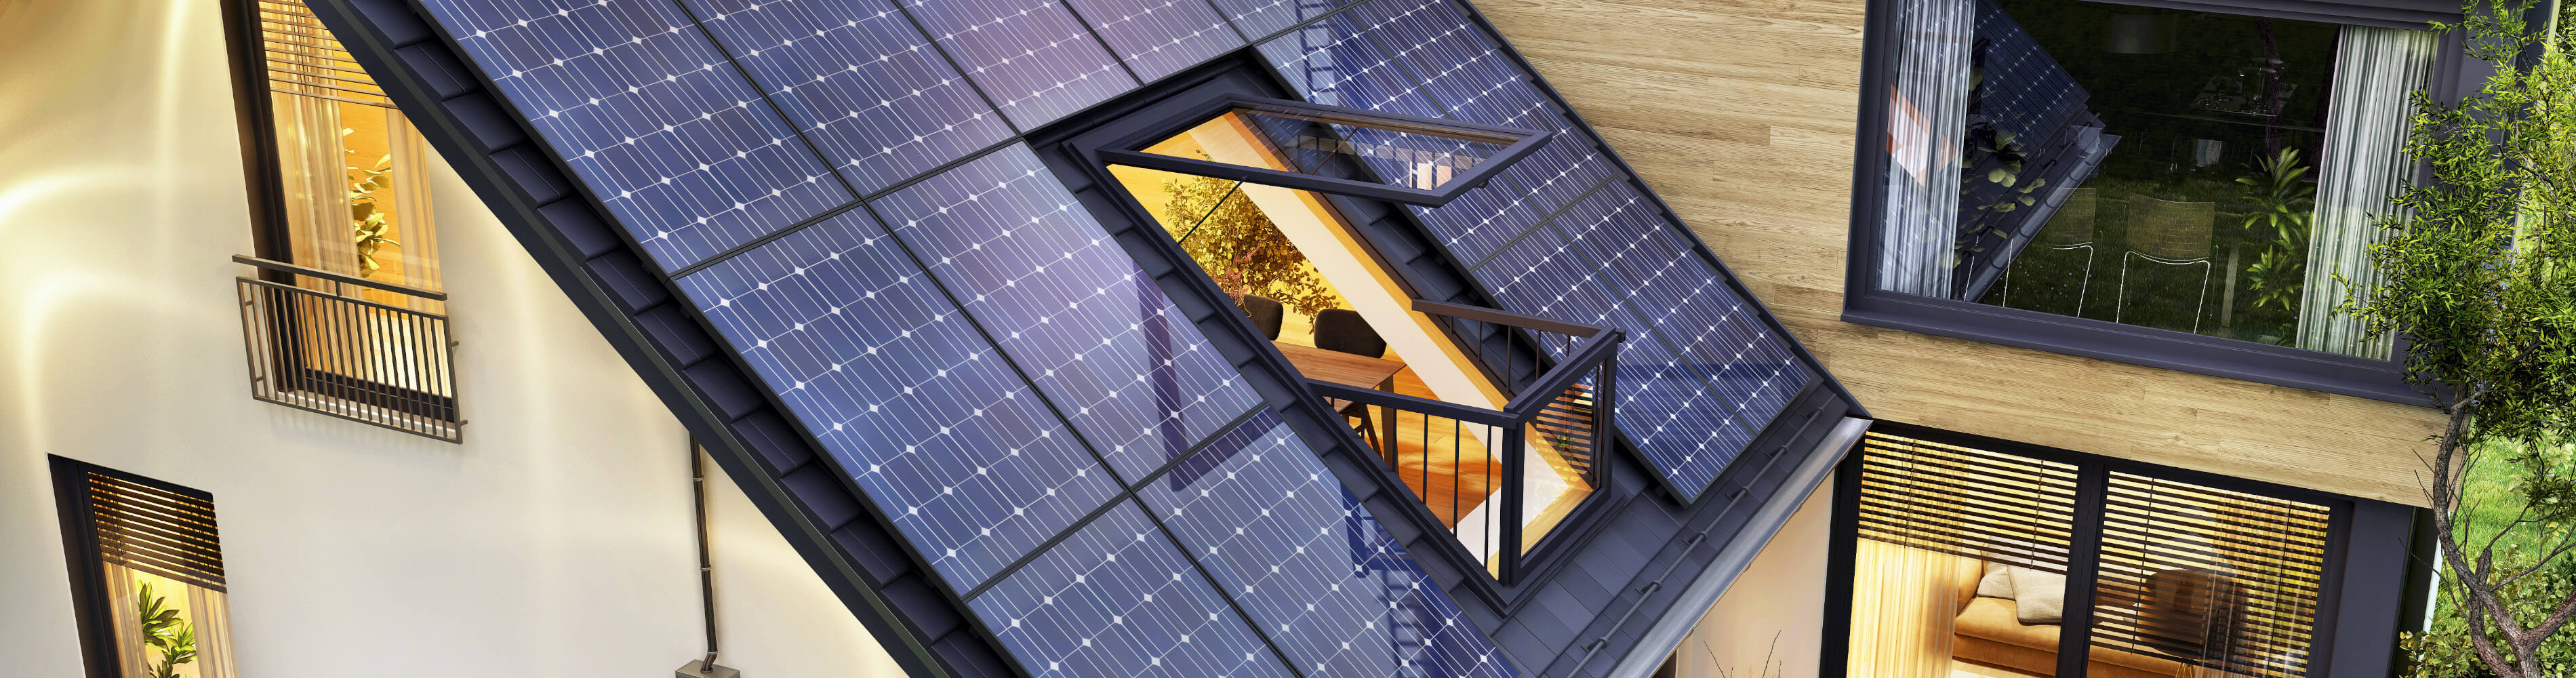 Darstellung von Solarmodulen auf Dach